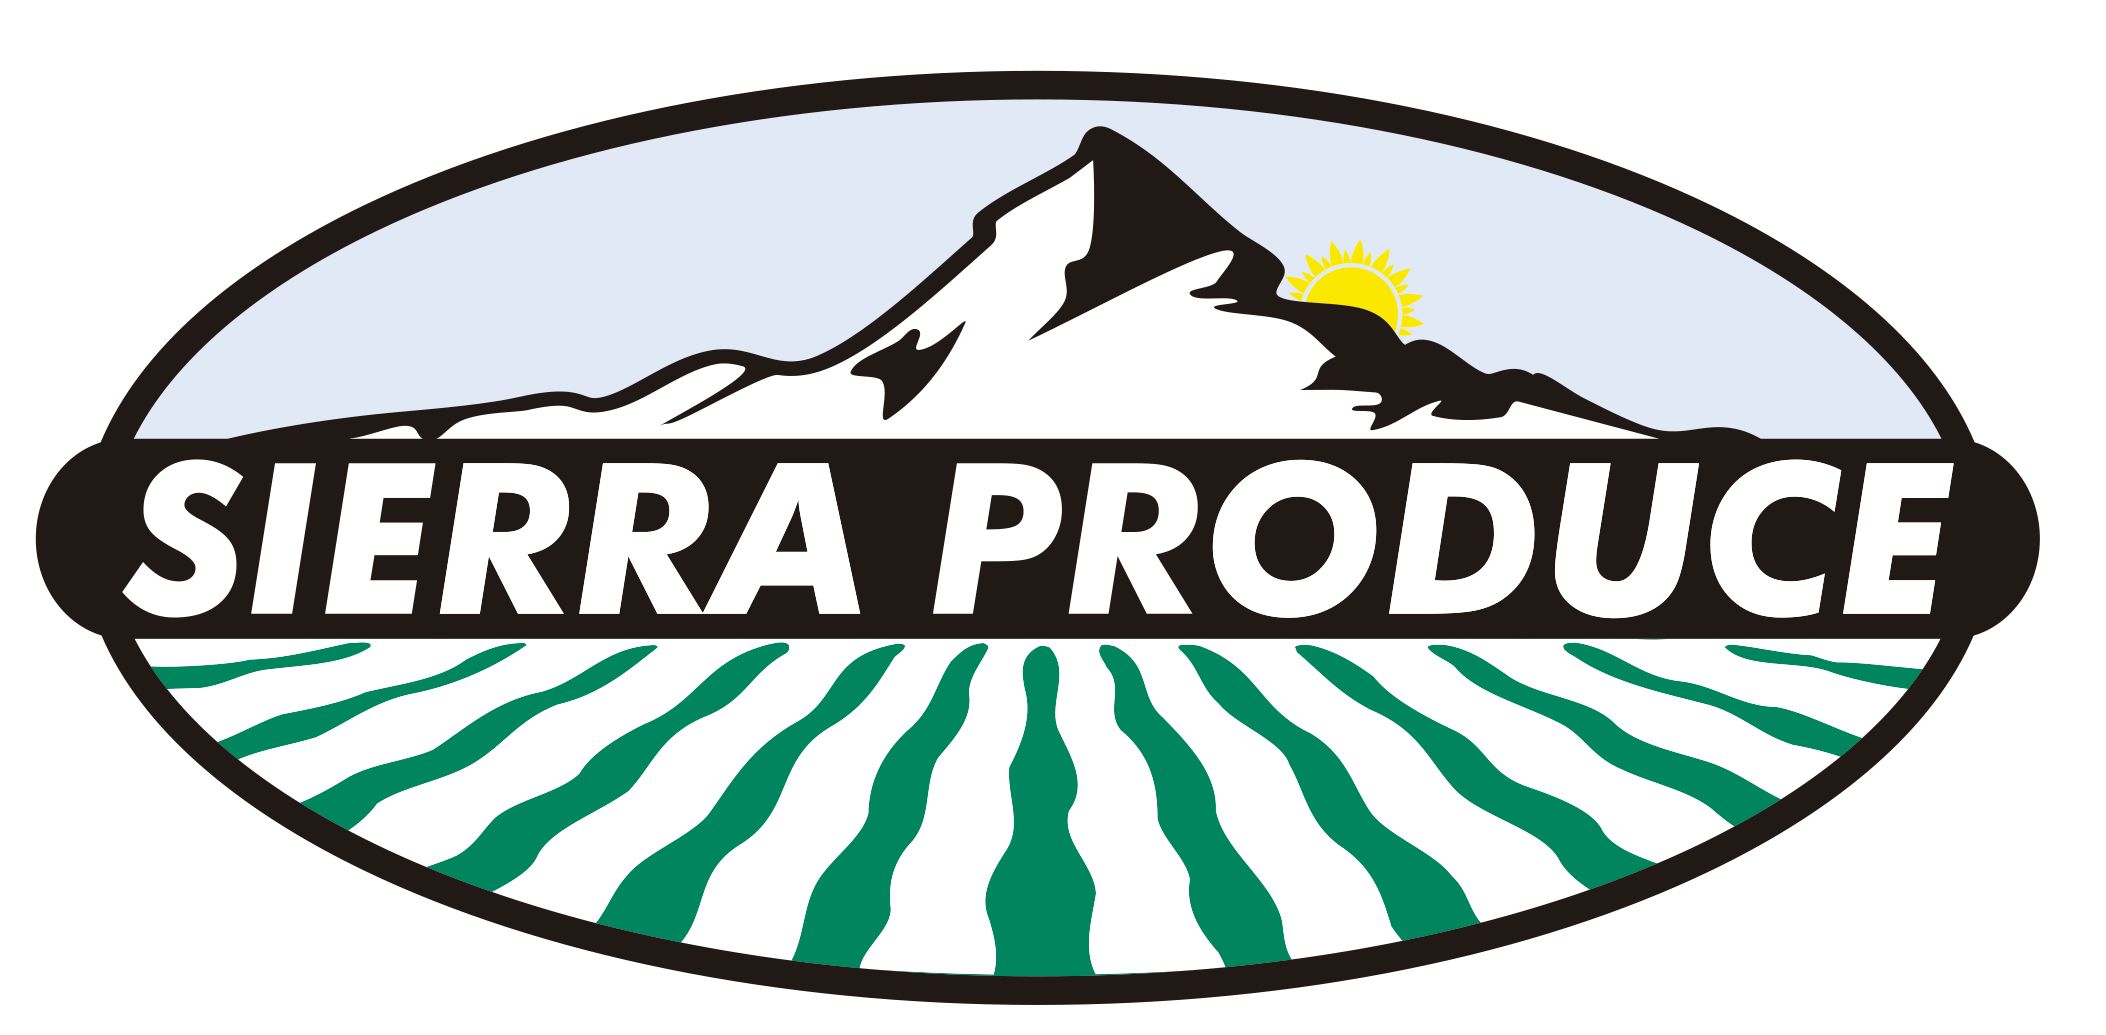 Sierra Produce